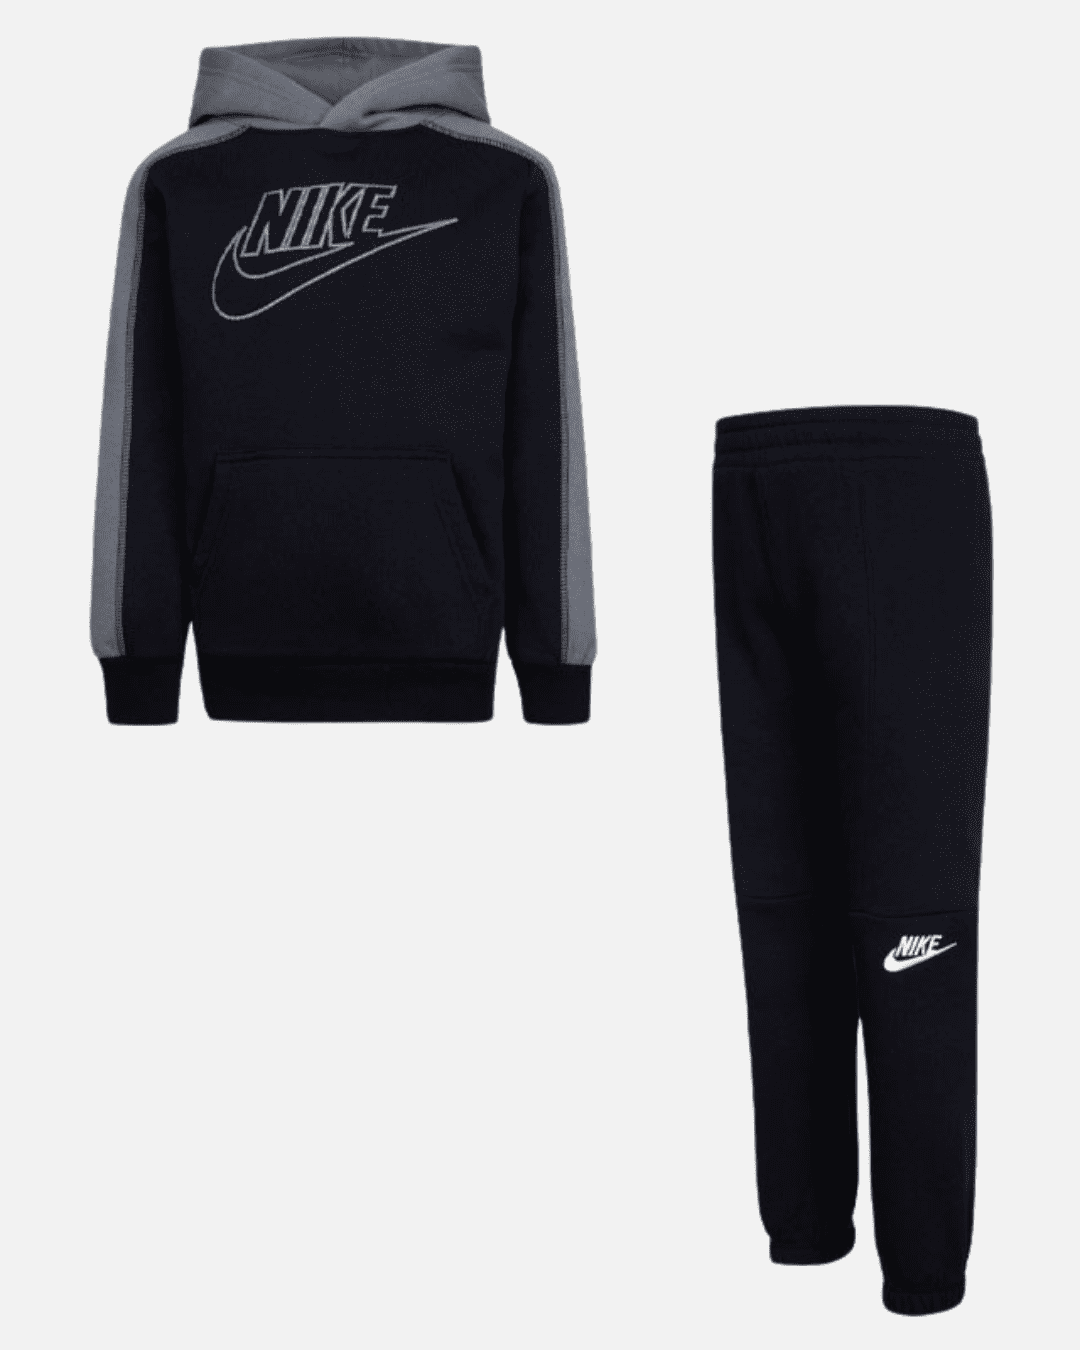 Nike Amplify PO Kit Kinder – Schwarz/Grau